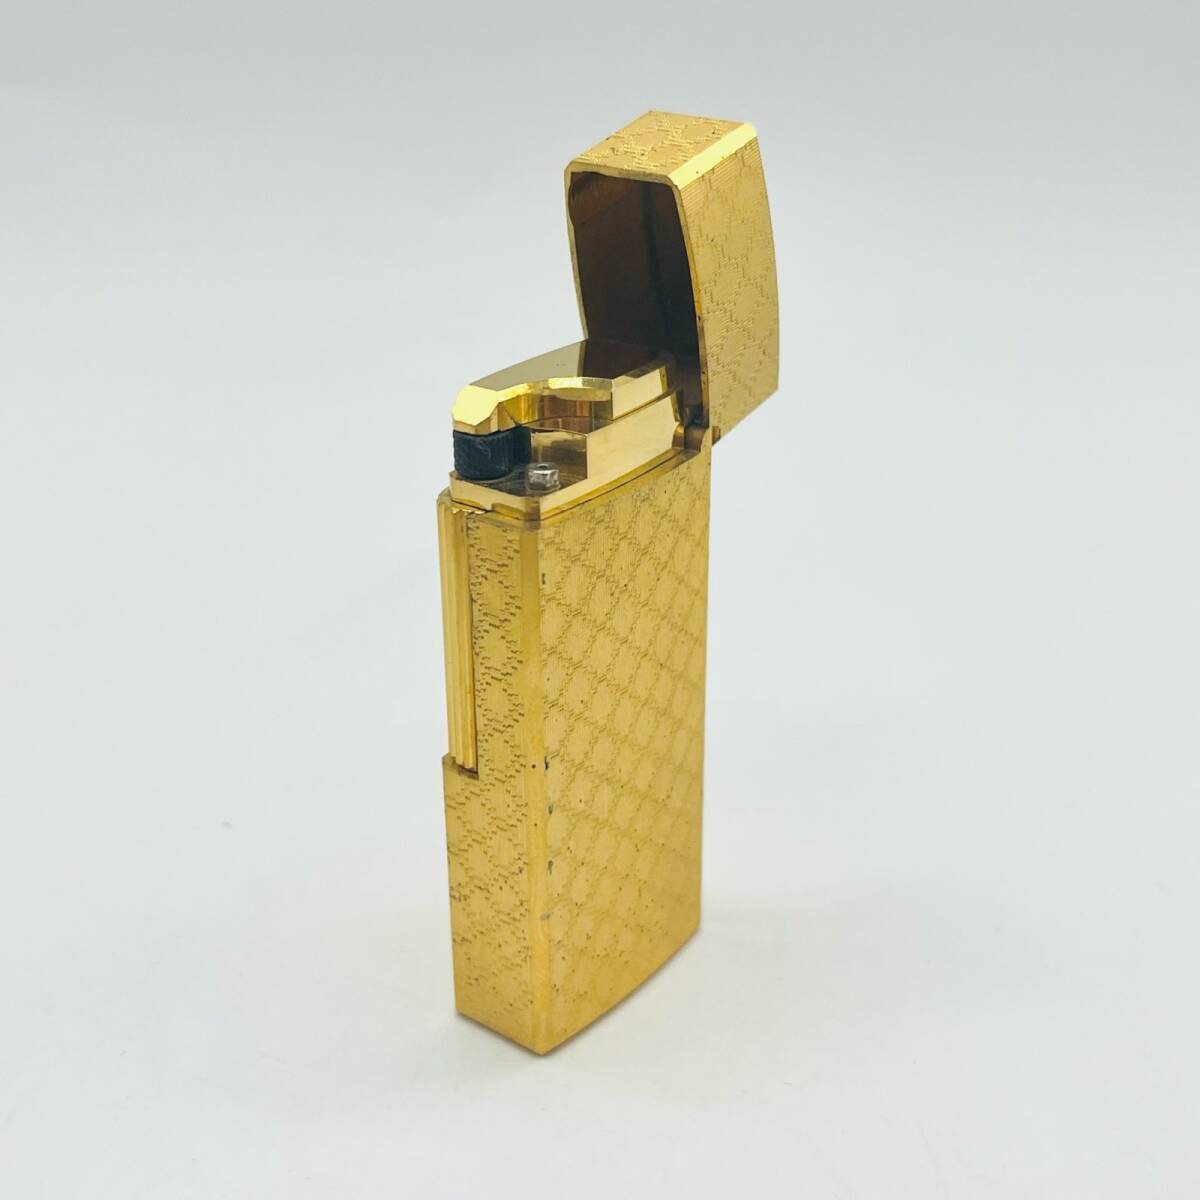 MARK CROSS マーククロス ガスライター ゴールドカラー ライター 喫煙具 かっこいい オシャレ ケース付 火花未確認 1円出品 中古品 8015 の画像3